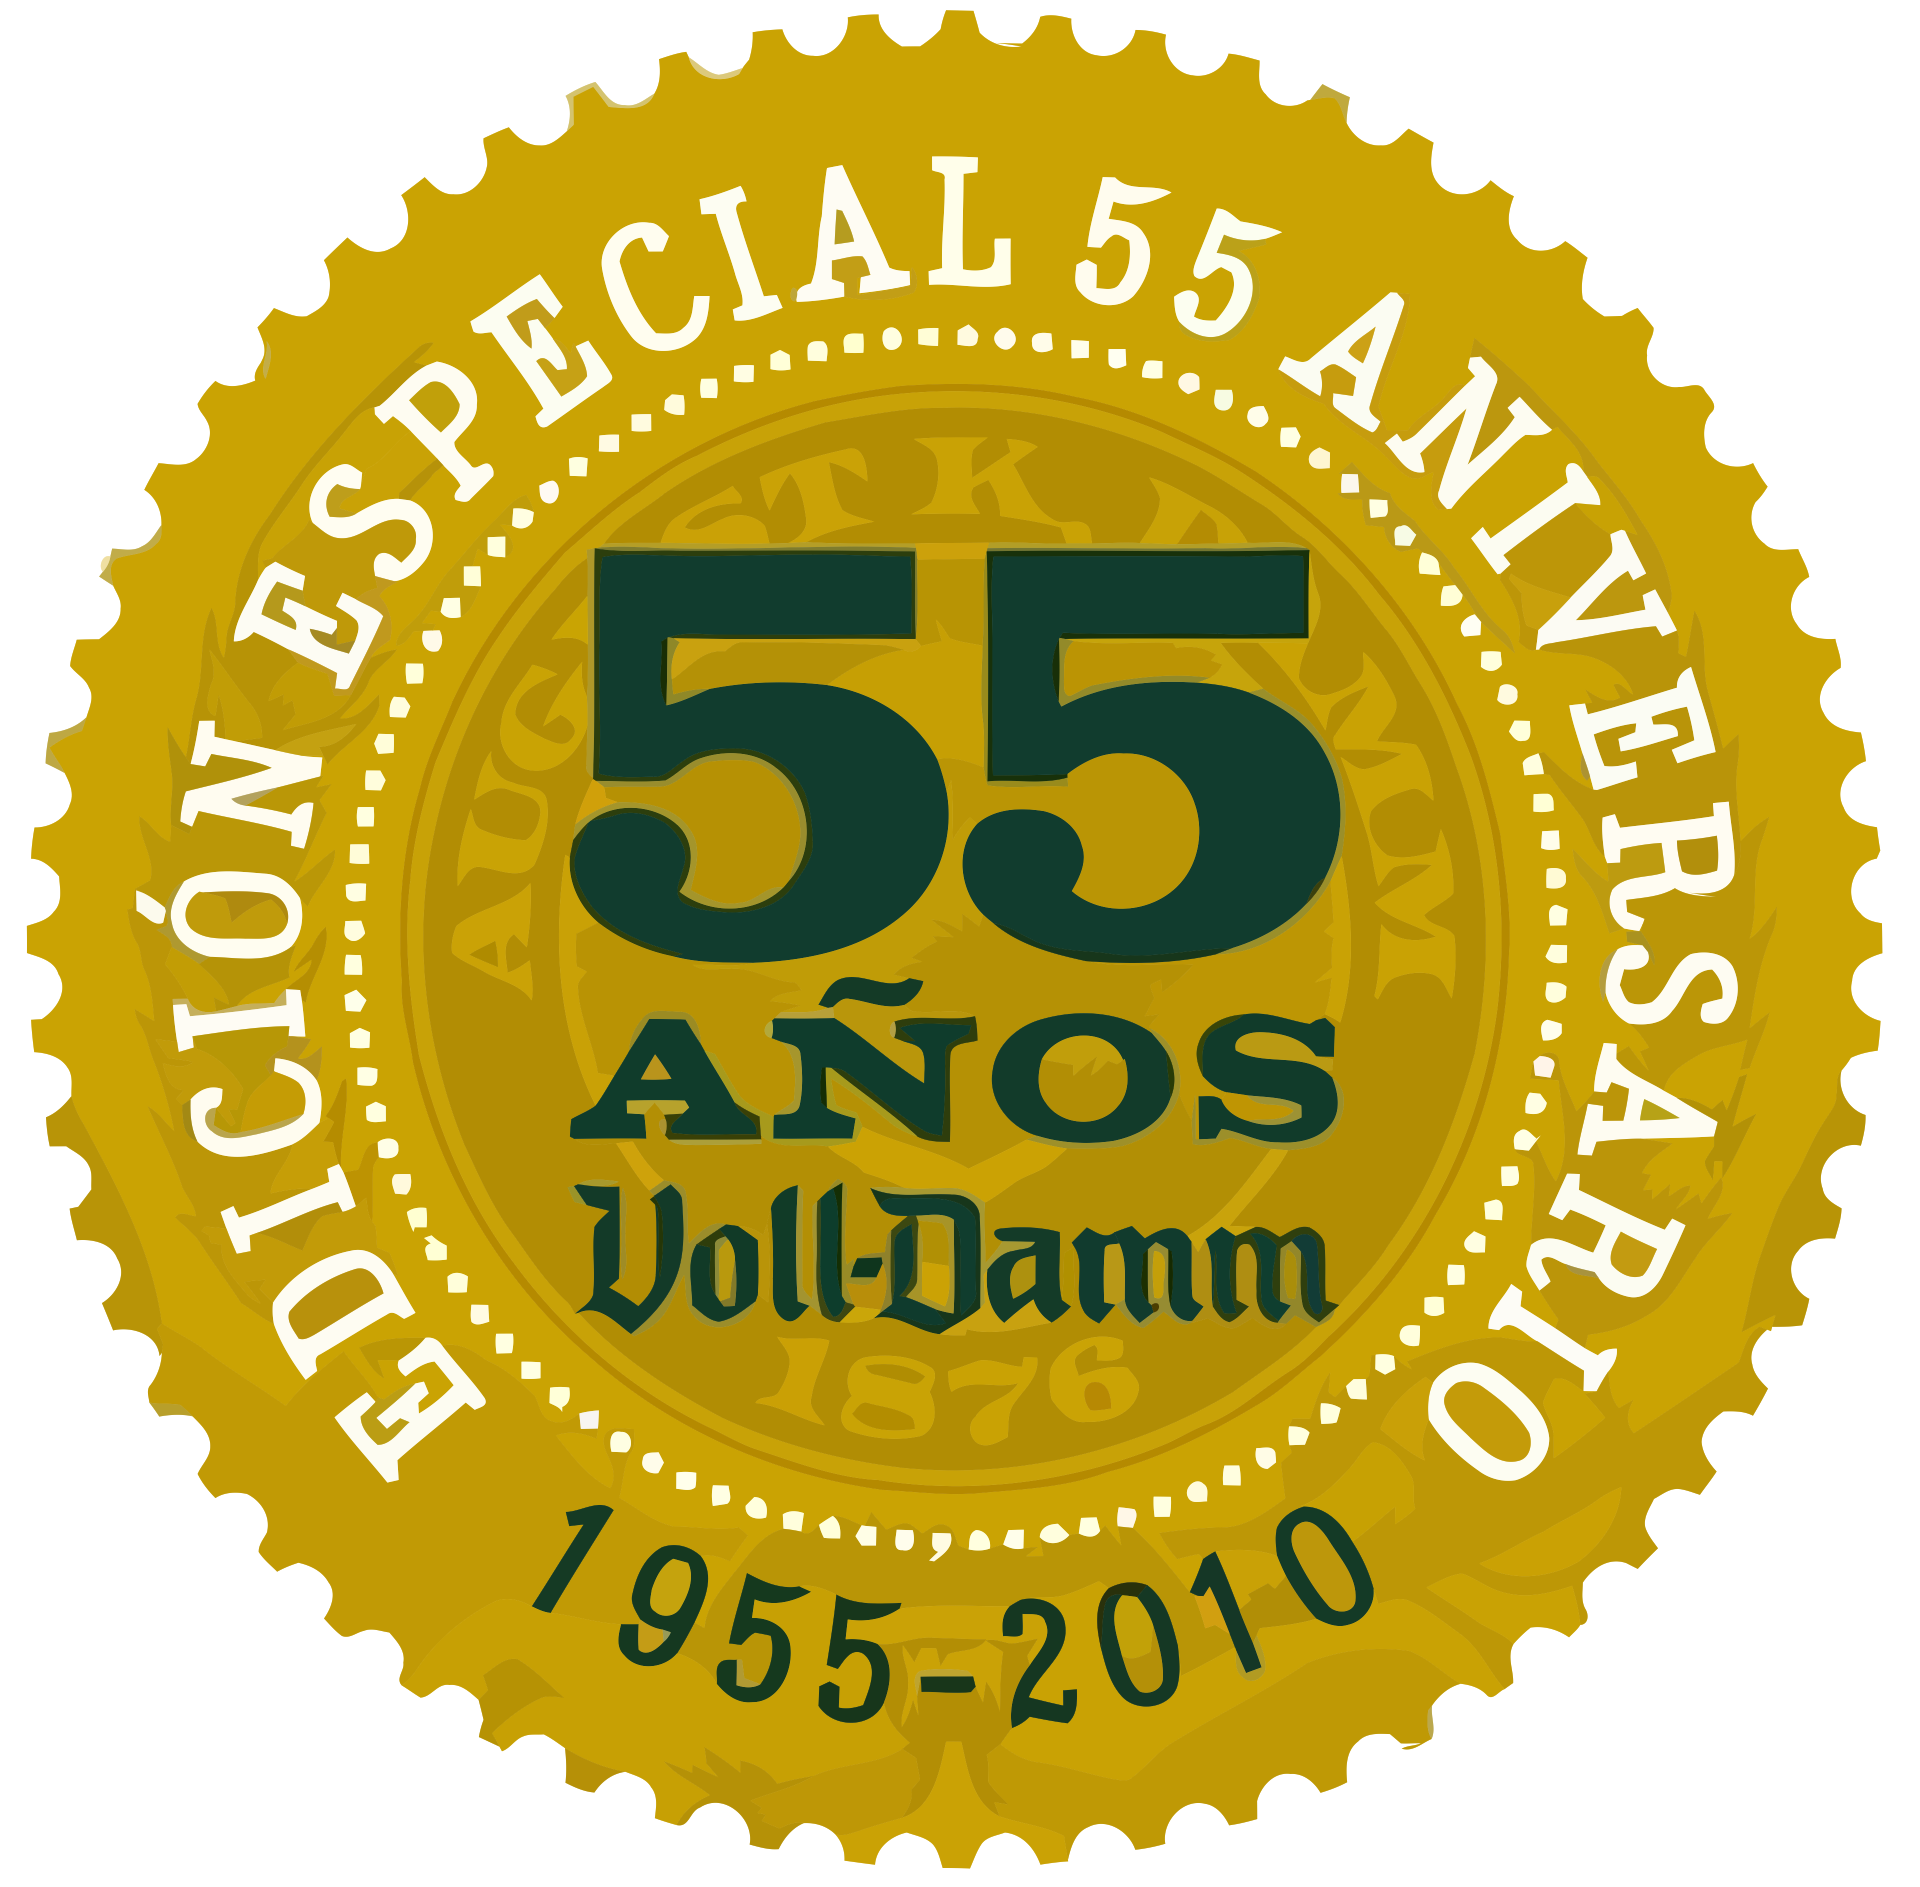 Logotipo del 55º aniversario de Voll-Damm